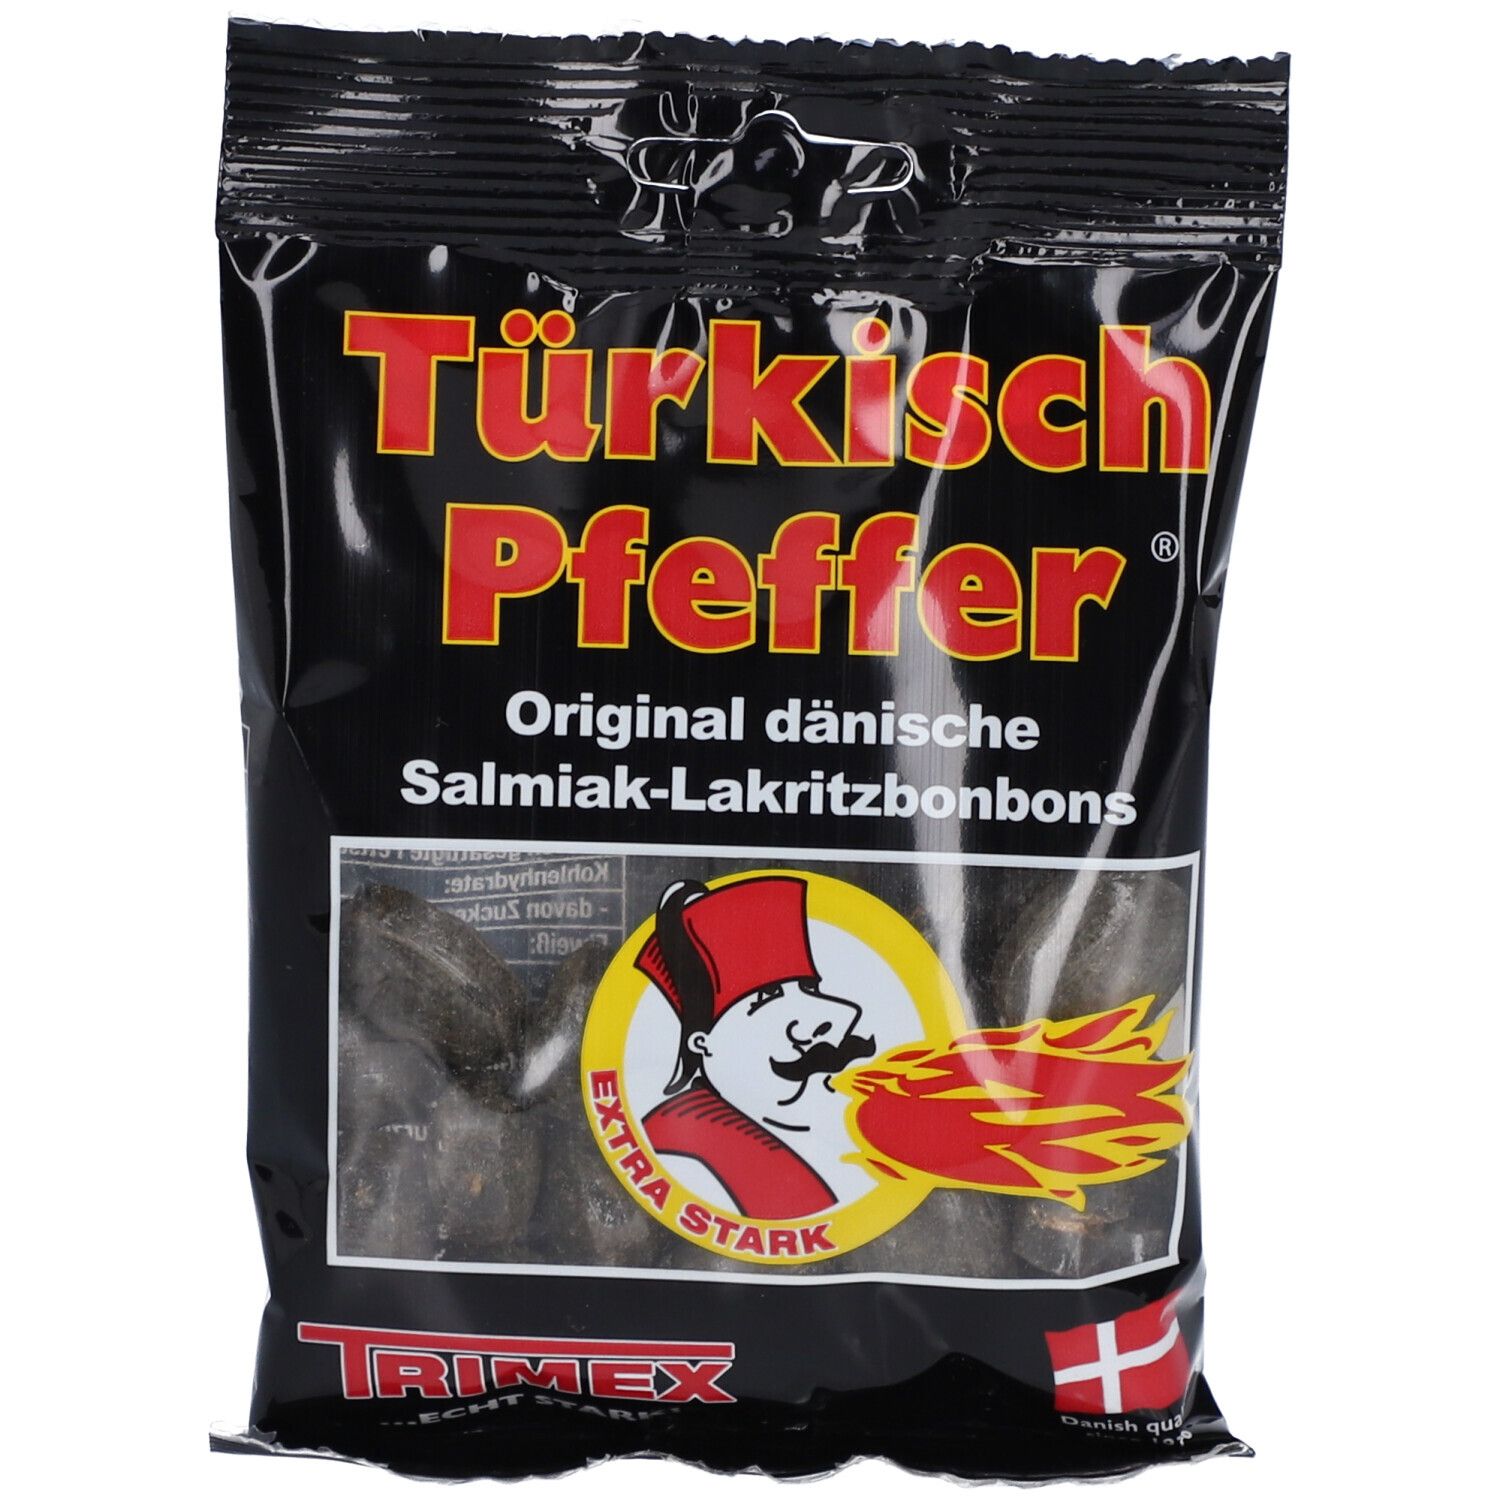 Türkisch Pfeffer® Original